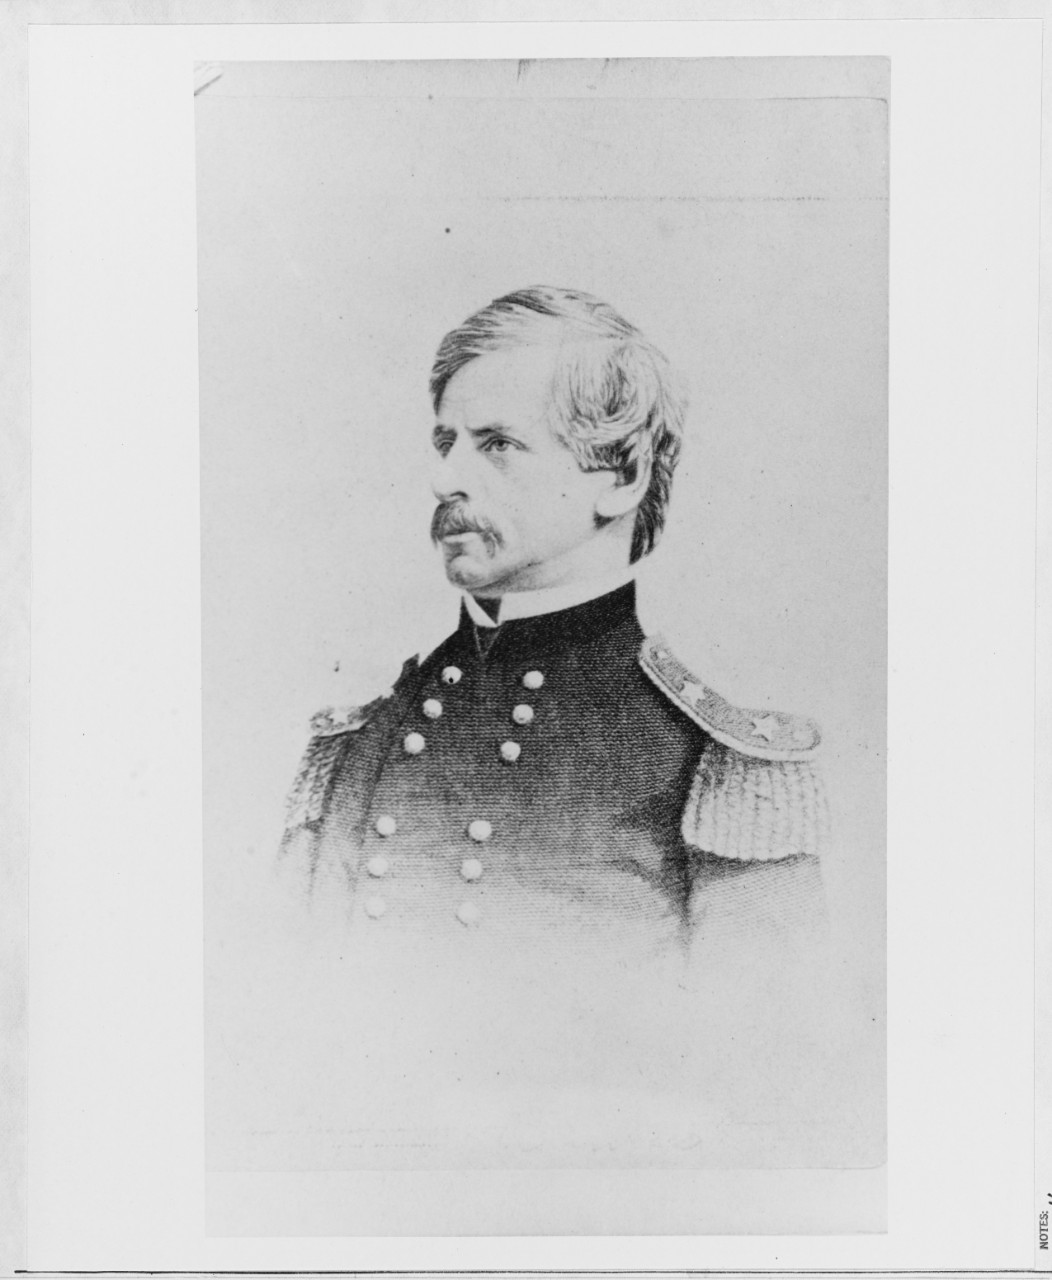 Brigadier General Nathaniel P. Banks, USA